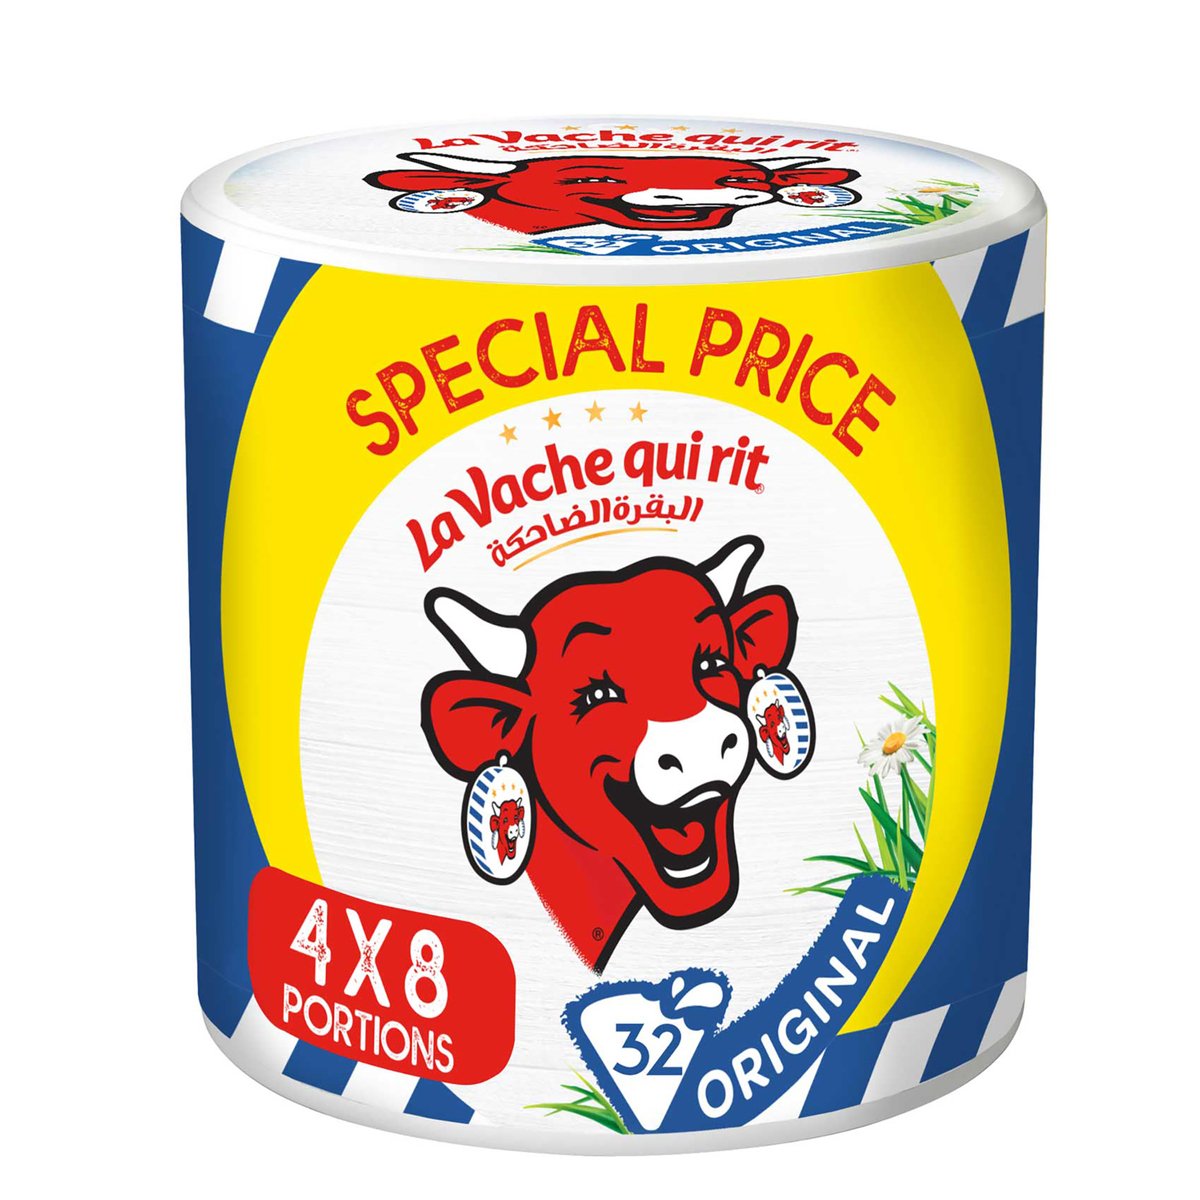 اشتري قم بشراء البقرة الضاحكة جبنة مثلثات أصلية 4 × 8 قطع 480 جم Online at Best Price من الموقع - من لولو هايبر ماركت Portion Cheese في السعودية